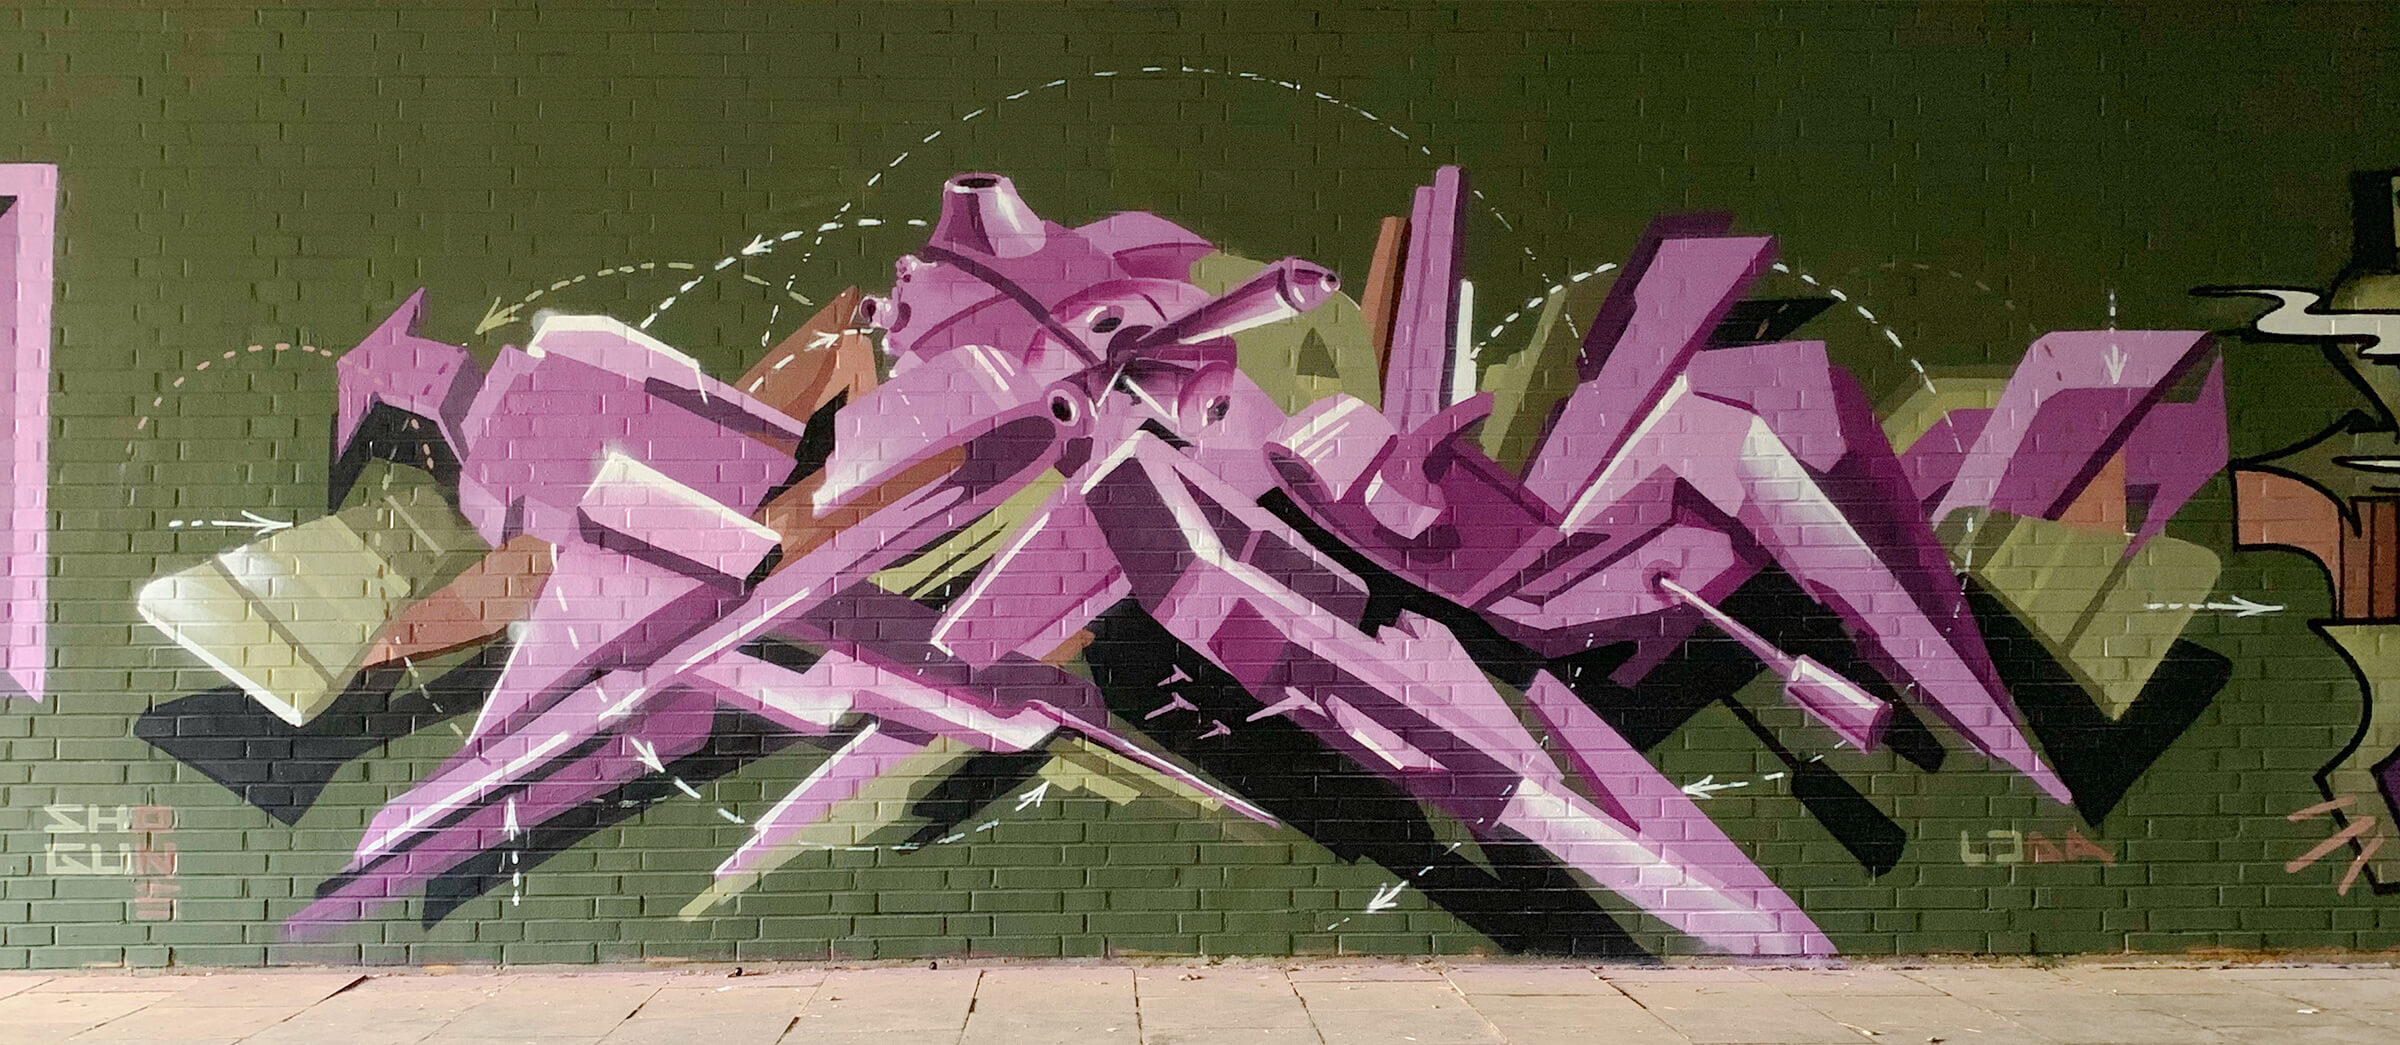 Shogun One Graffiti – Pseudo 3D - Leverkusen 2019 – Germany